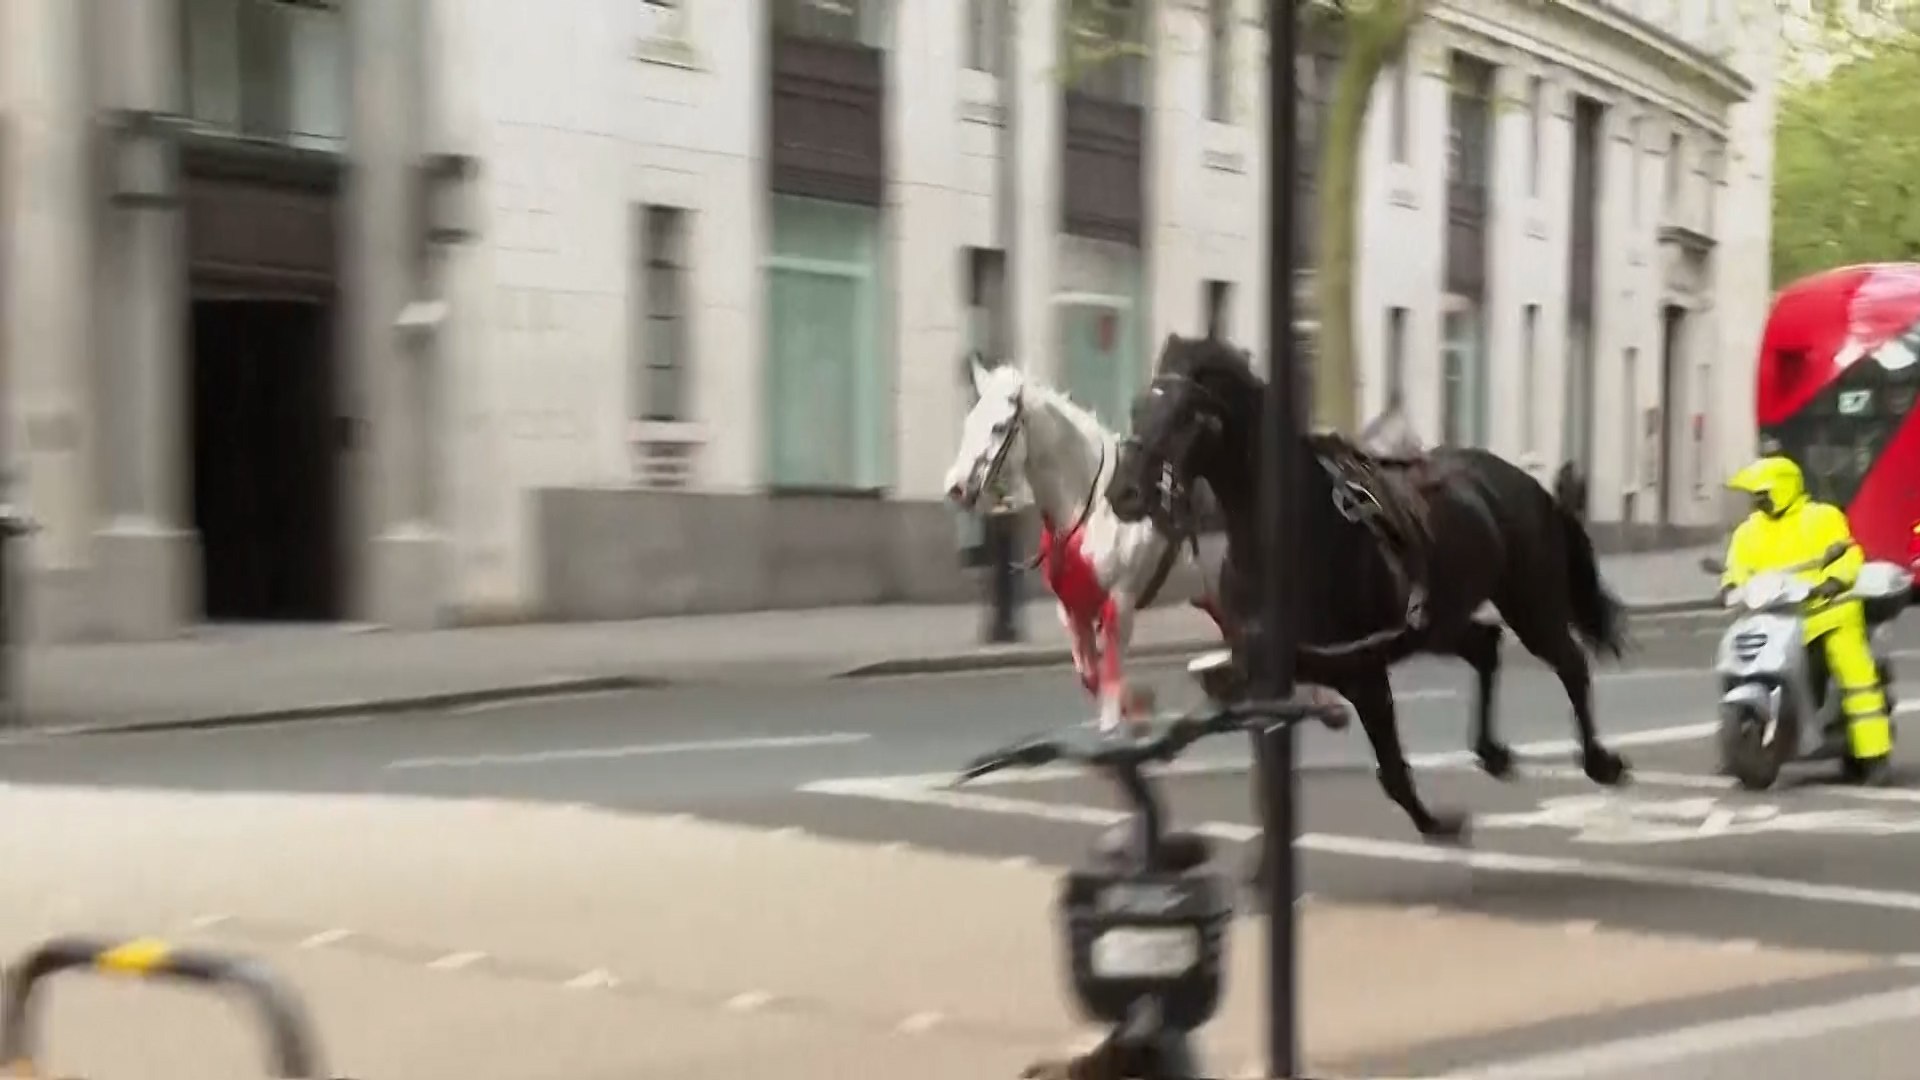 Unos caballos asustados siembran el caos por las calles de Londres